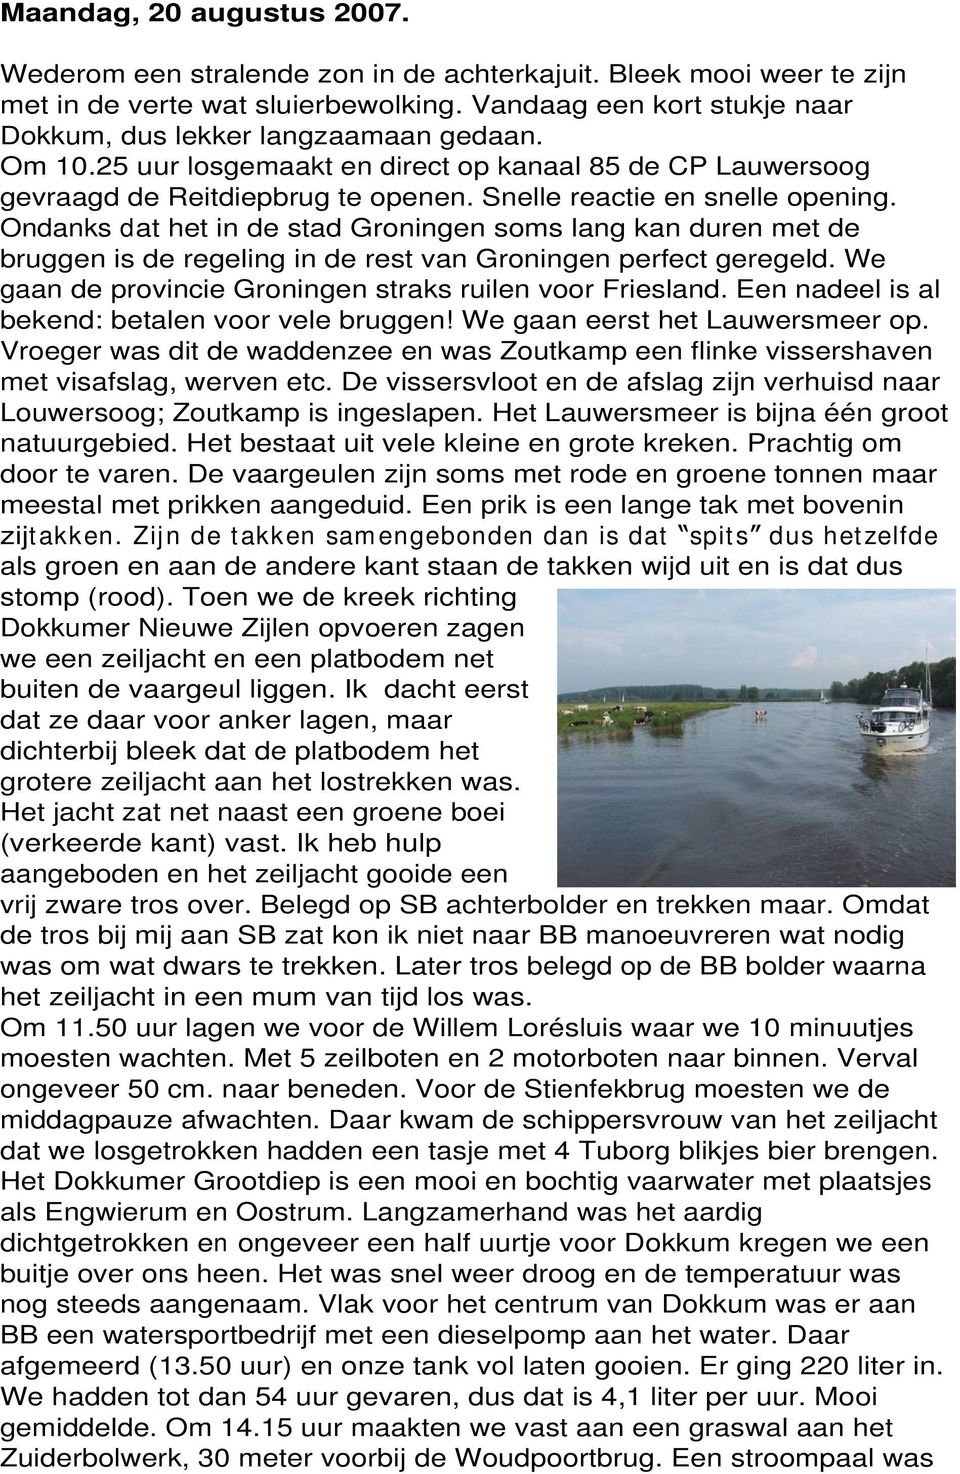 Snelle reactie en snelle opening. Ondanks dat het in de stad Groningen soms lang kan duren met de bruggen is de regeling in de rest van Groningen perfect geregeld.